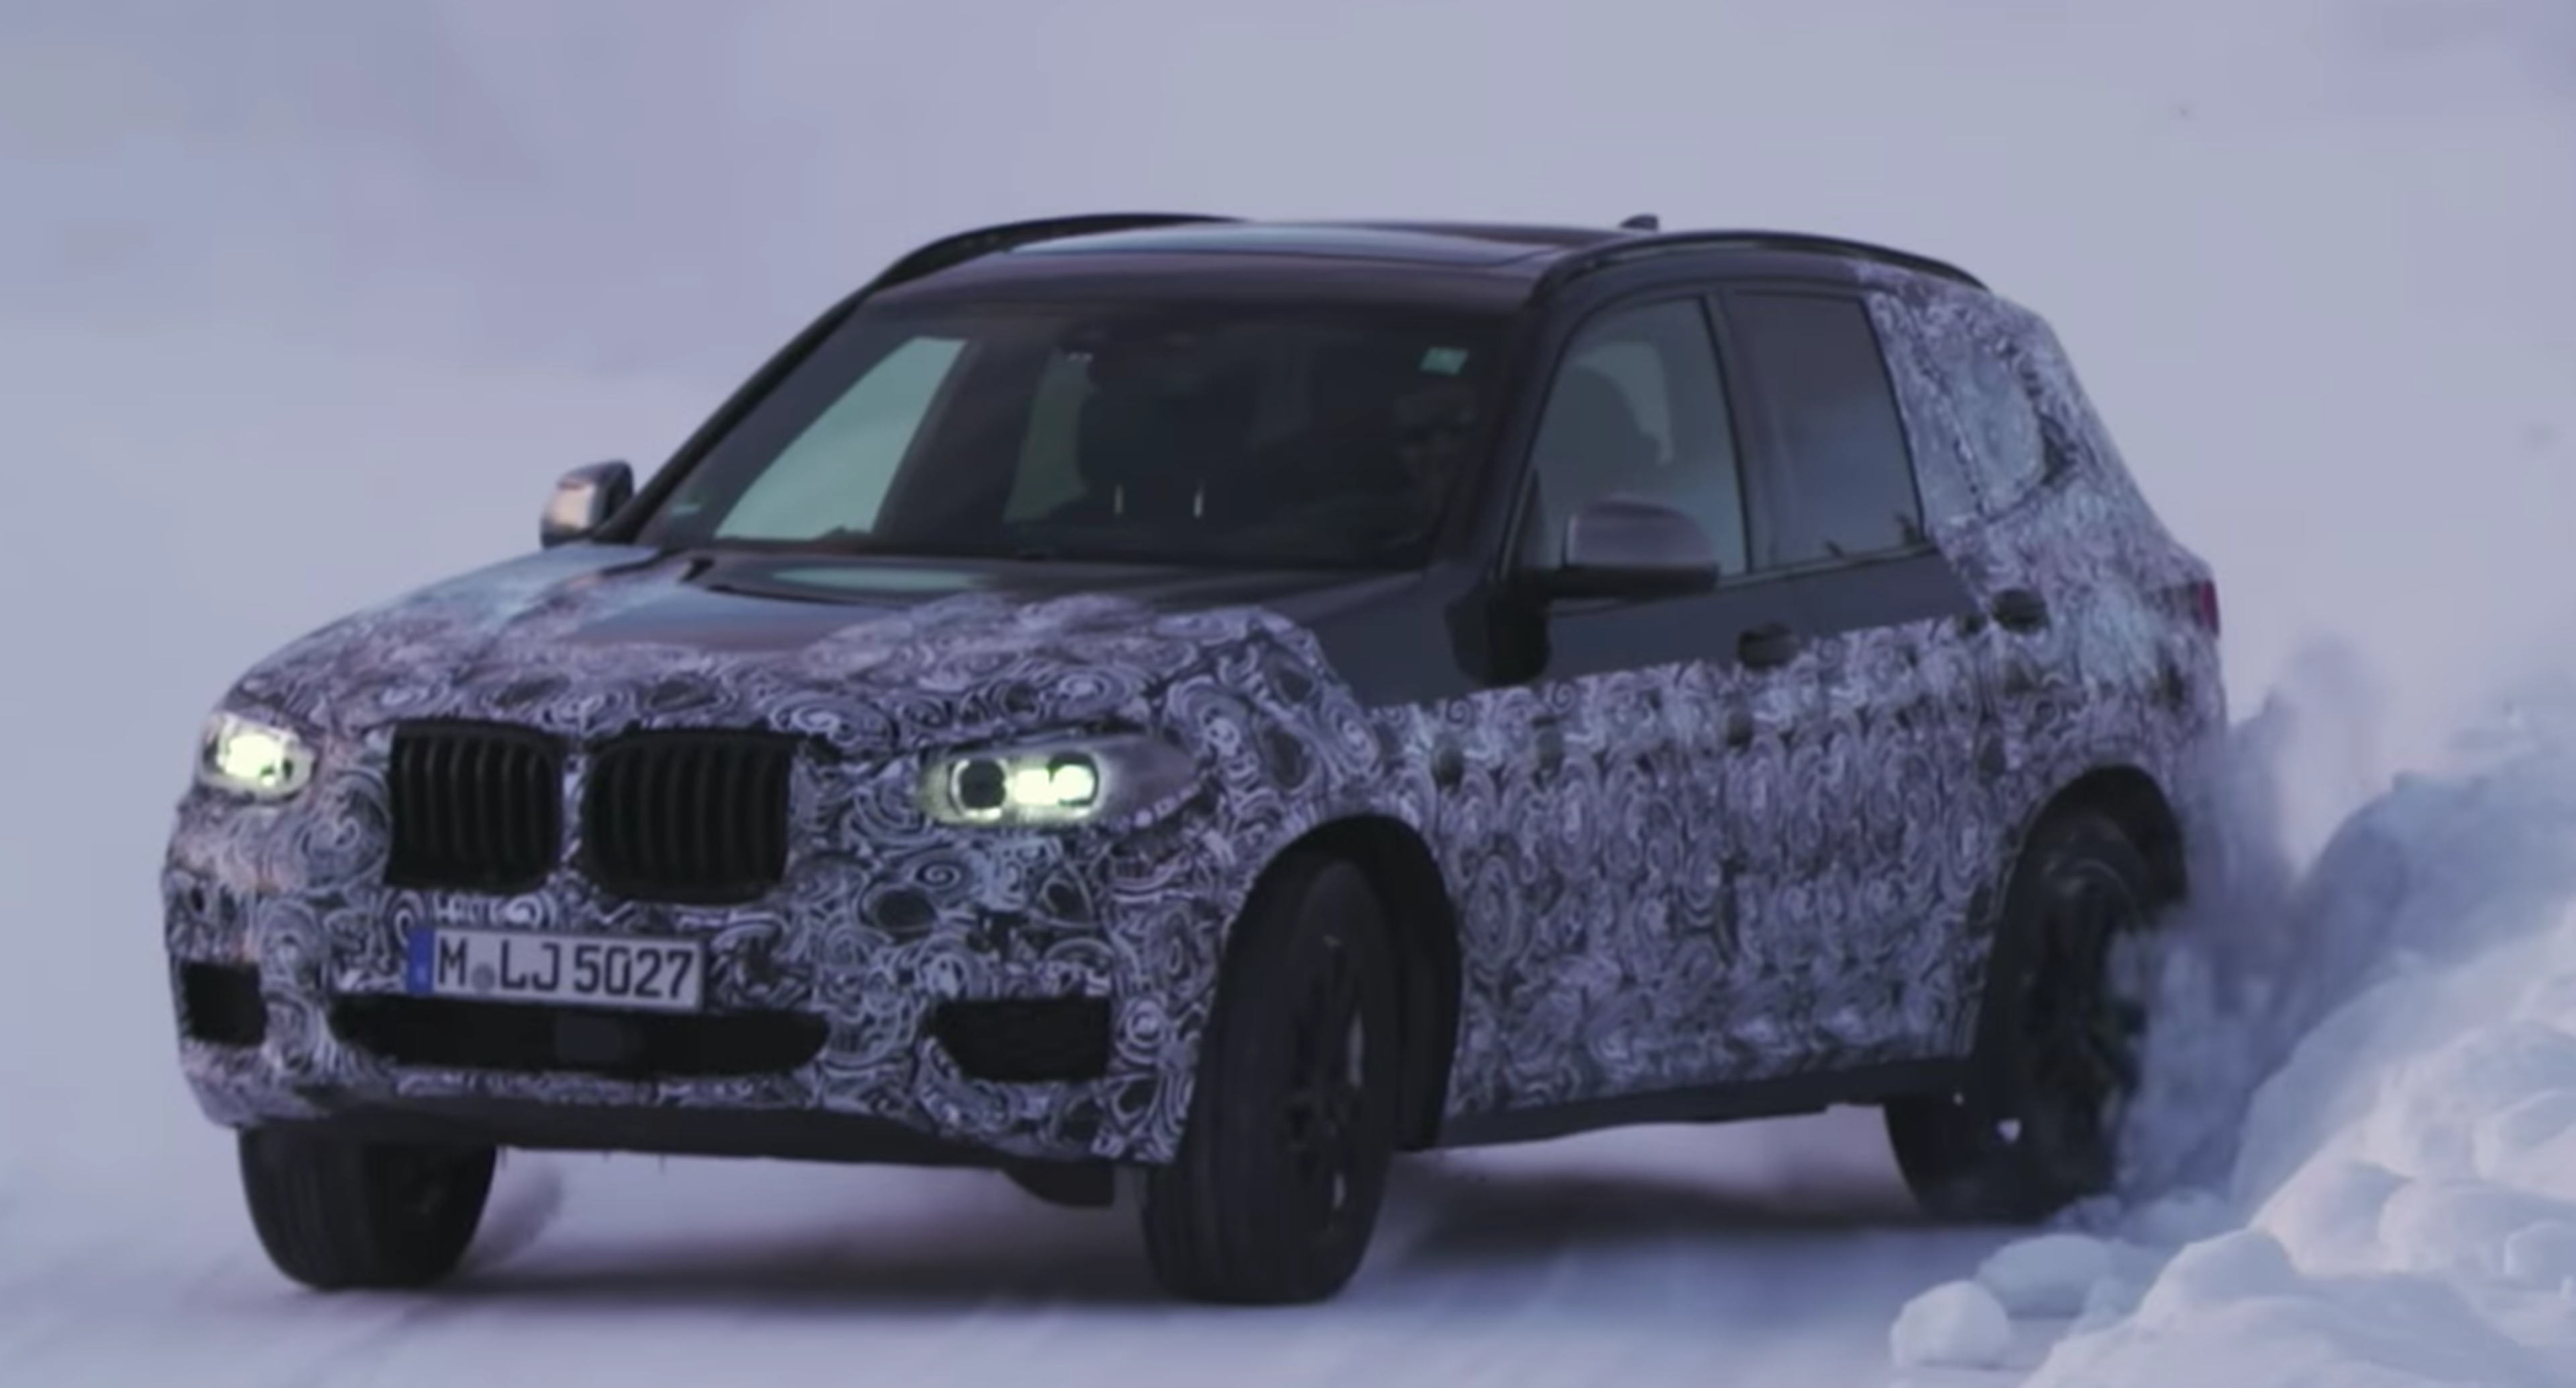 VÍDEO: El BMW X7 se pone en forma sobre la nieve